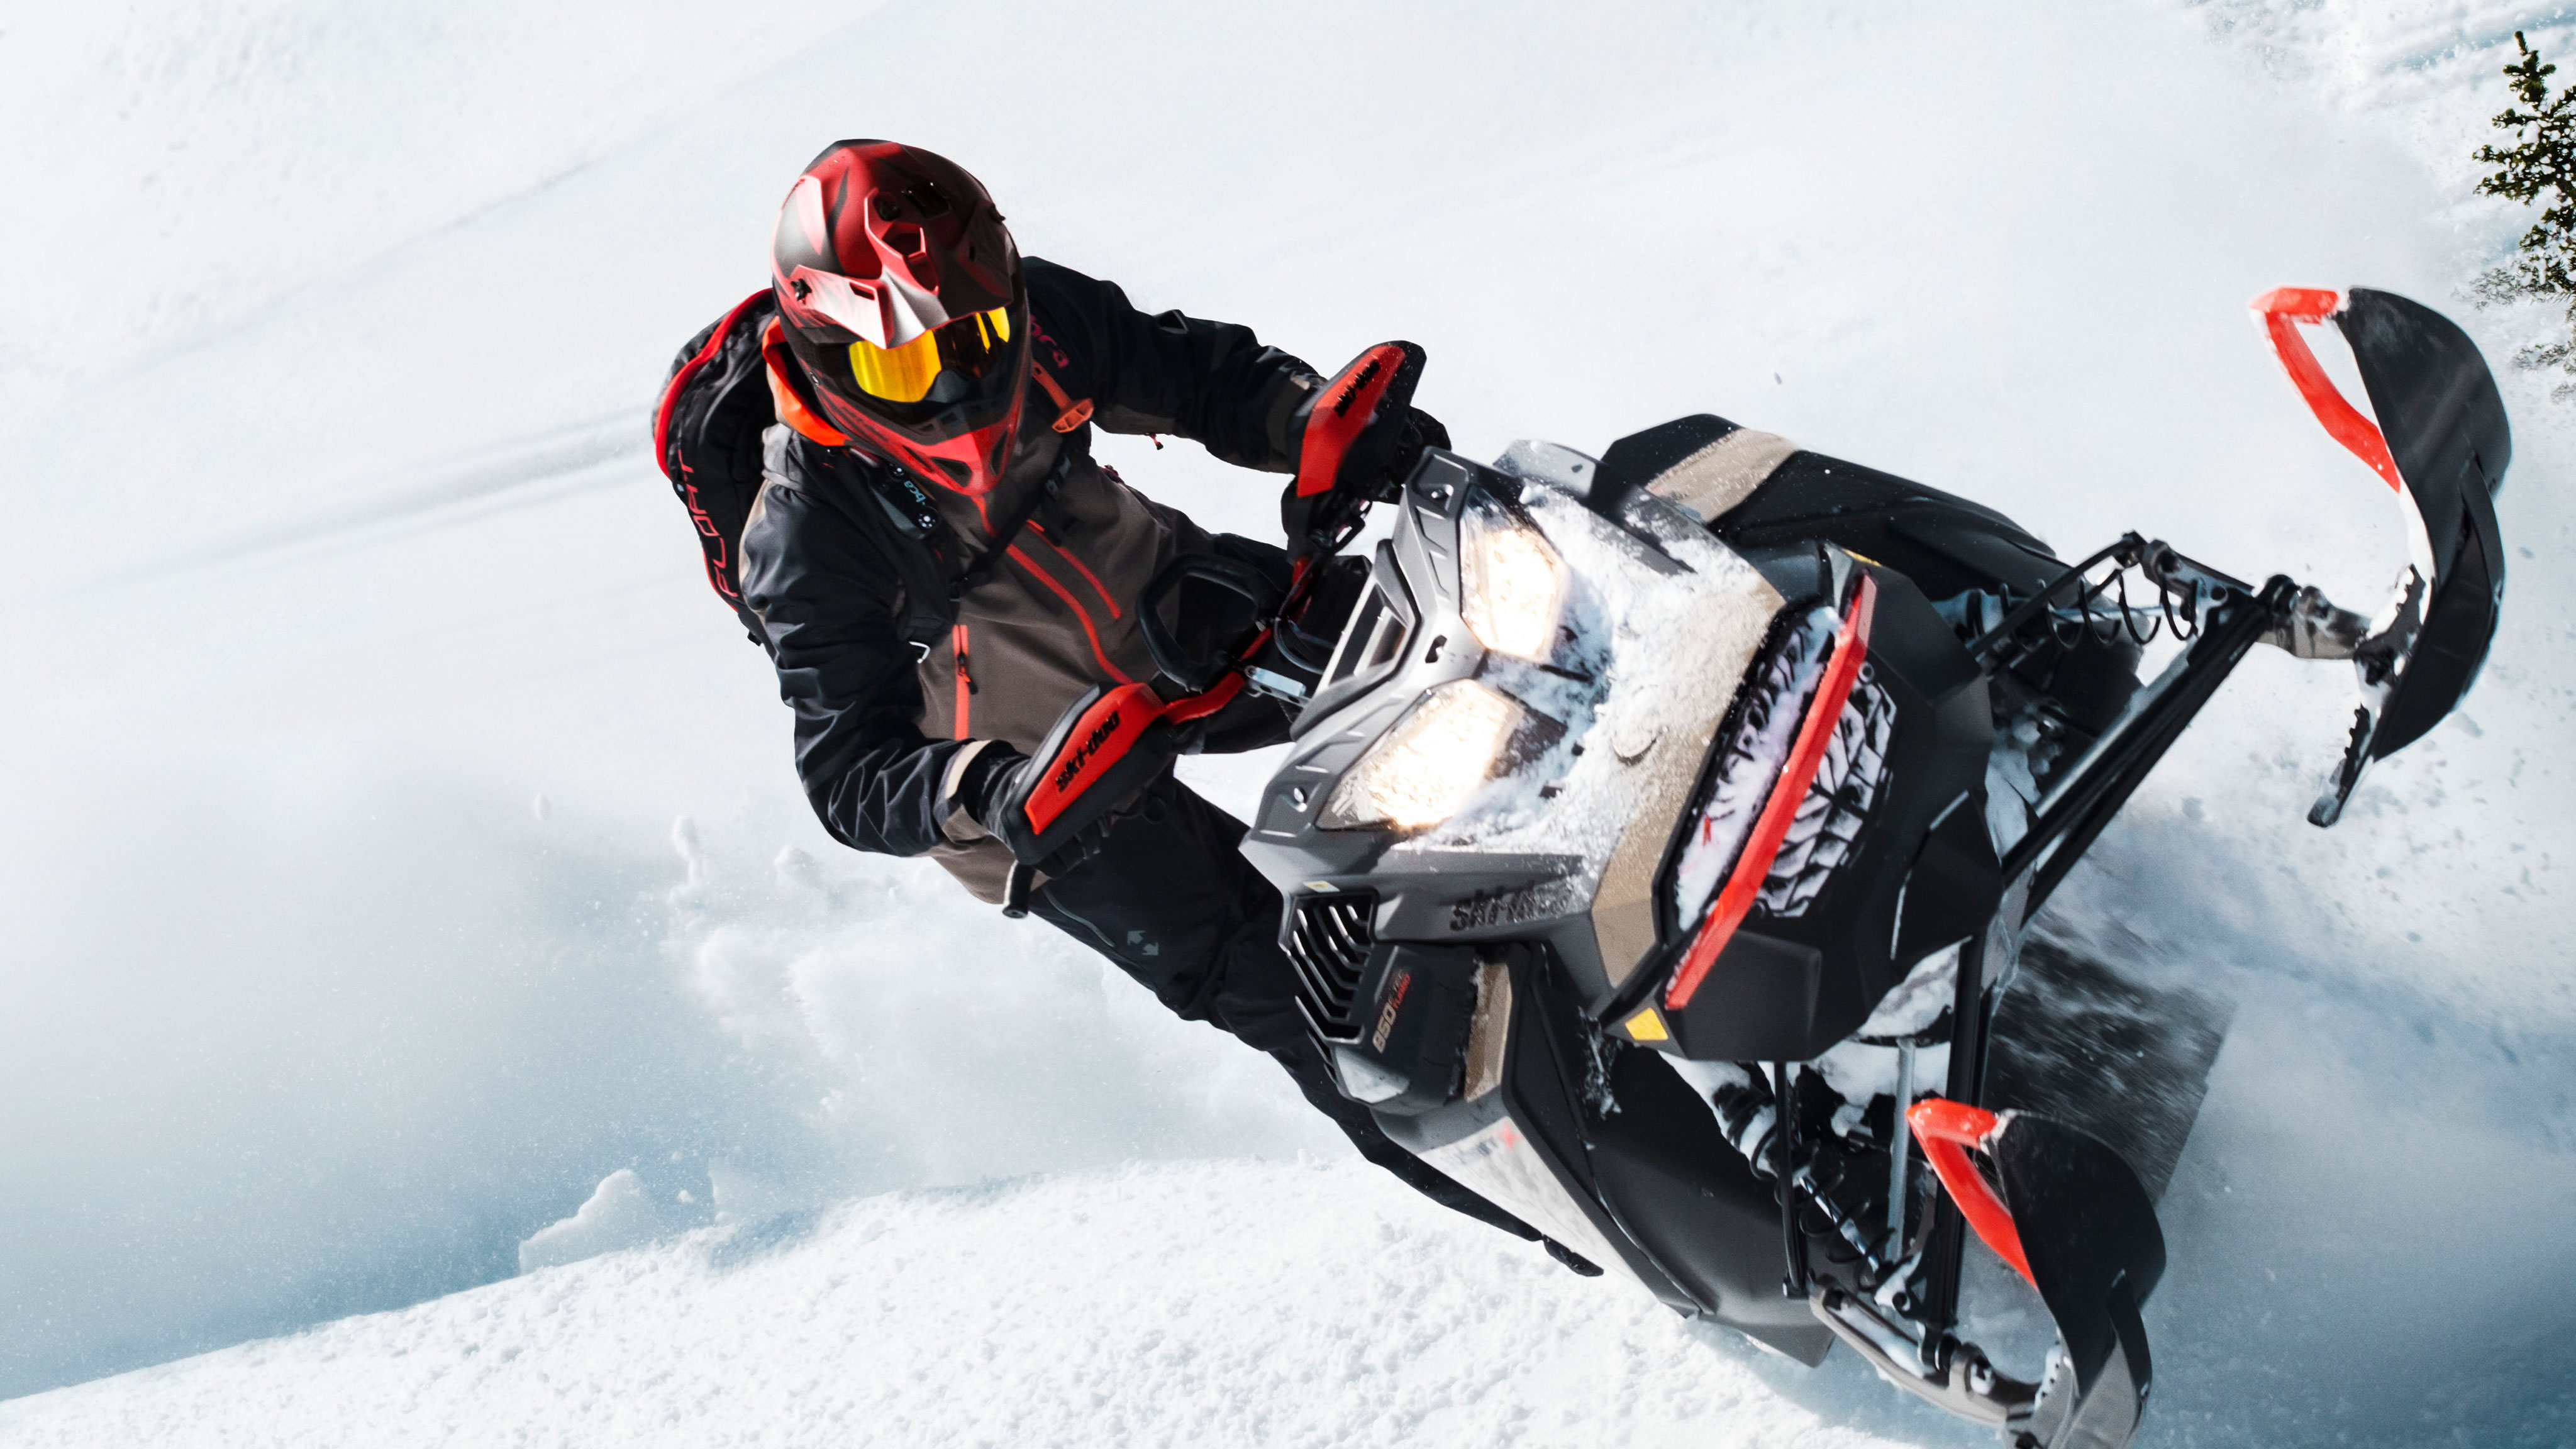  Čovjek s velikim uzbuđenjima u dubokom snijegu sa svojim Ski-Doo Summitom